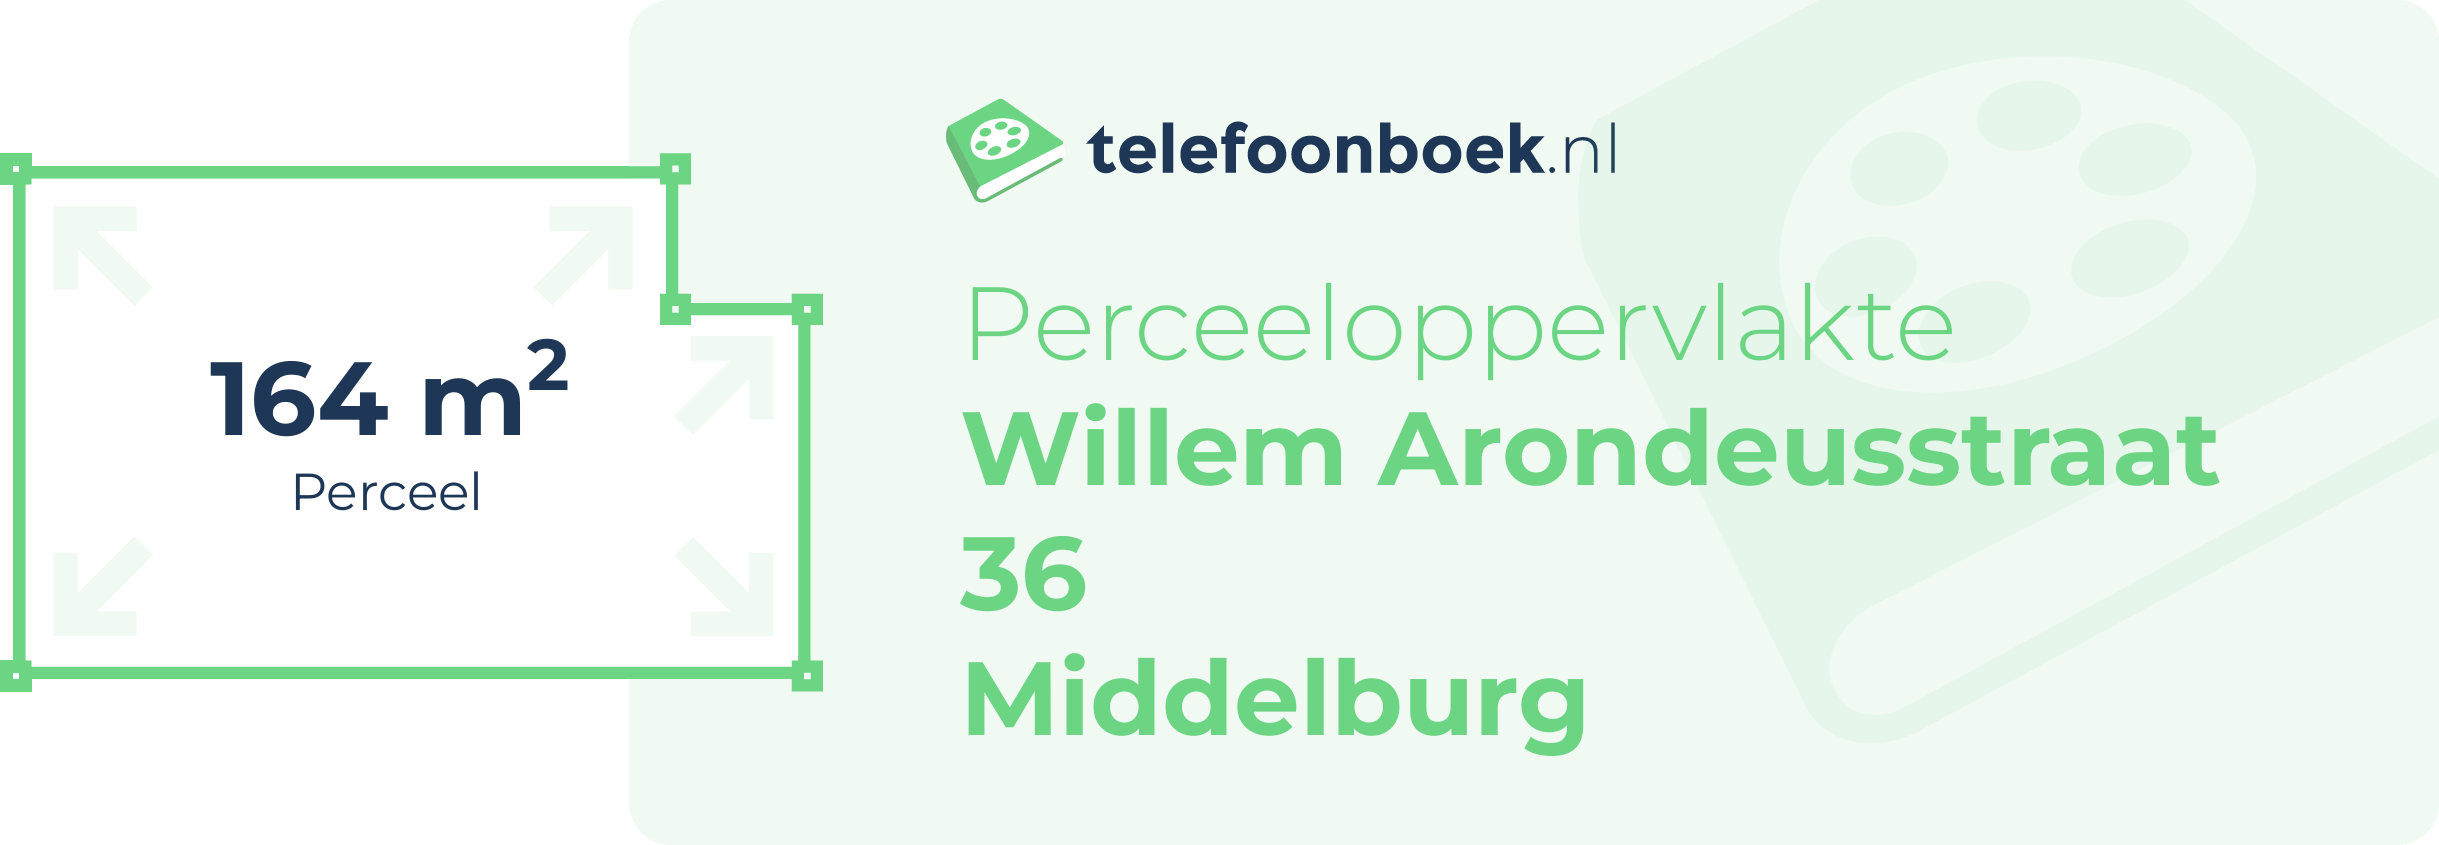 Perceeloppervlakte Willem Arondeusstraat 36 Middelburg